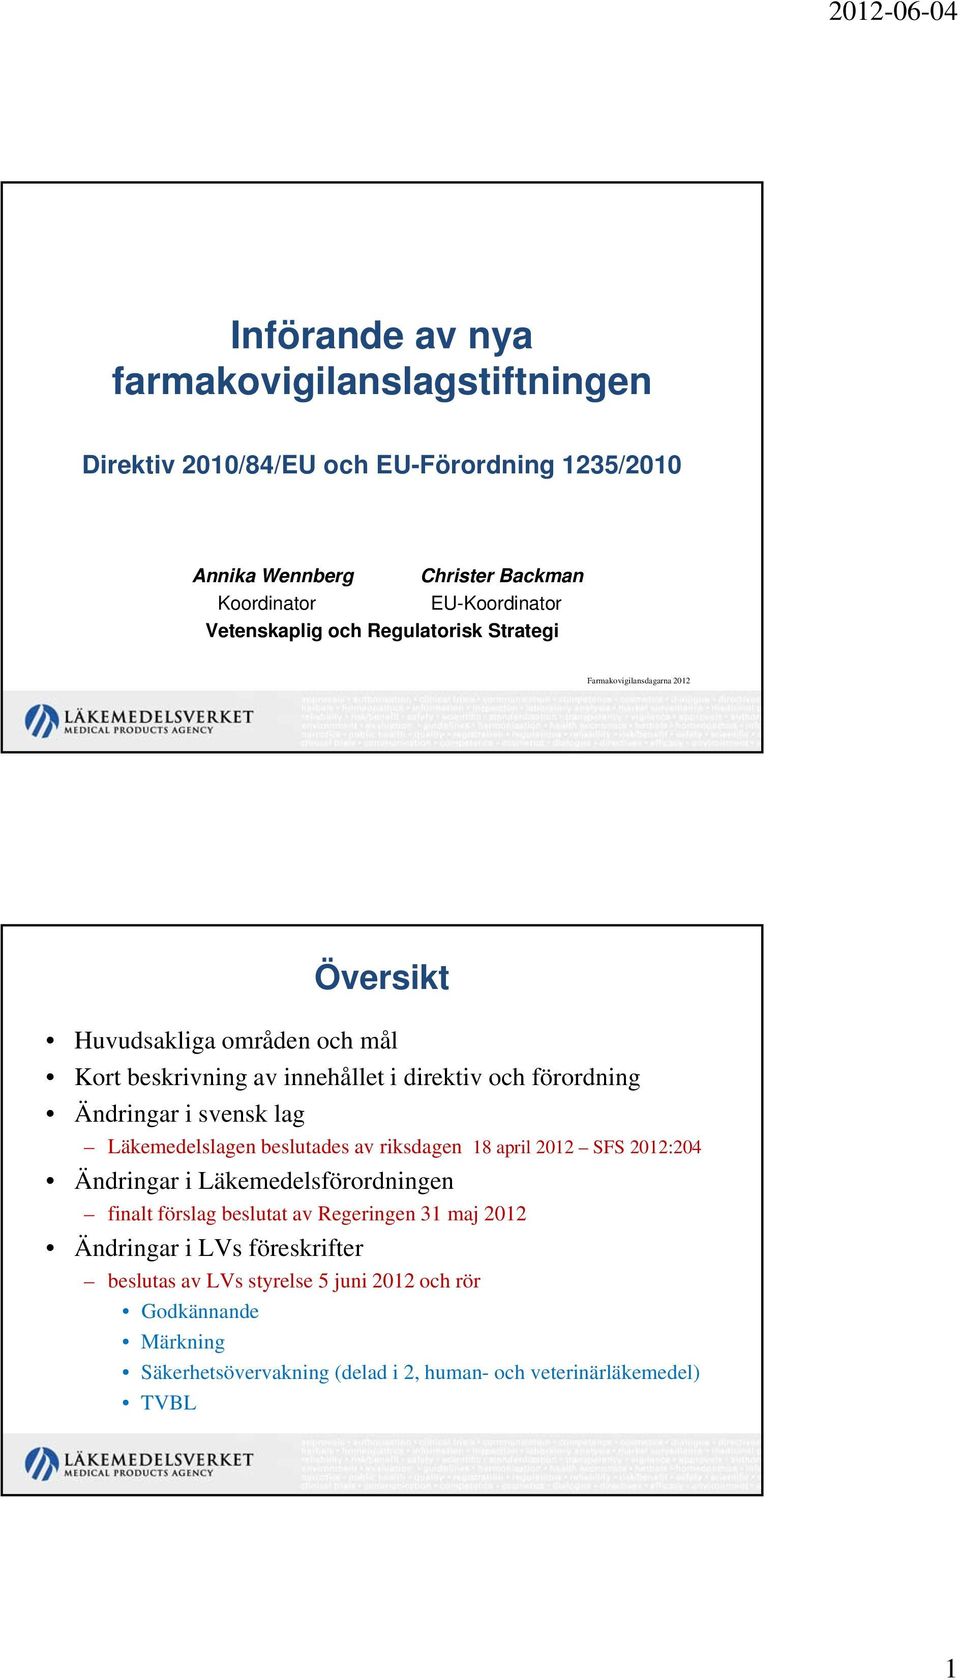 Ändringar i svensk lag Läkemedelslagen beslutades av riksdagen 18 april 2012 SFS 2012:204 Ändringar i Läkemedelsförordningen finalt förslag beslutat av Regeringen 31